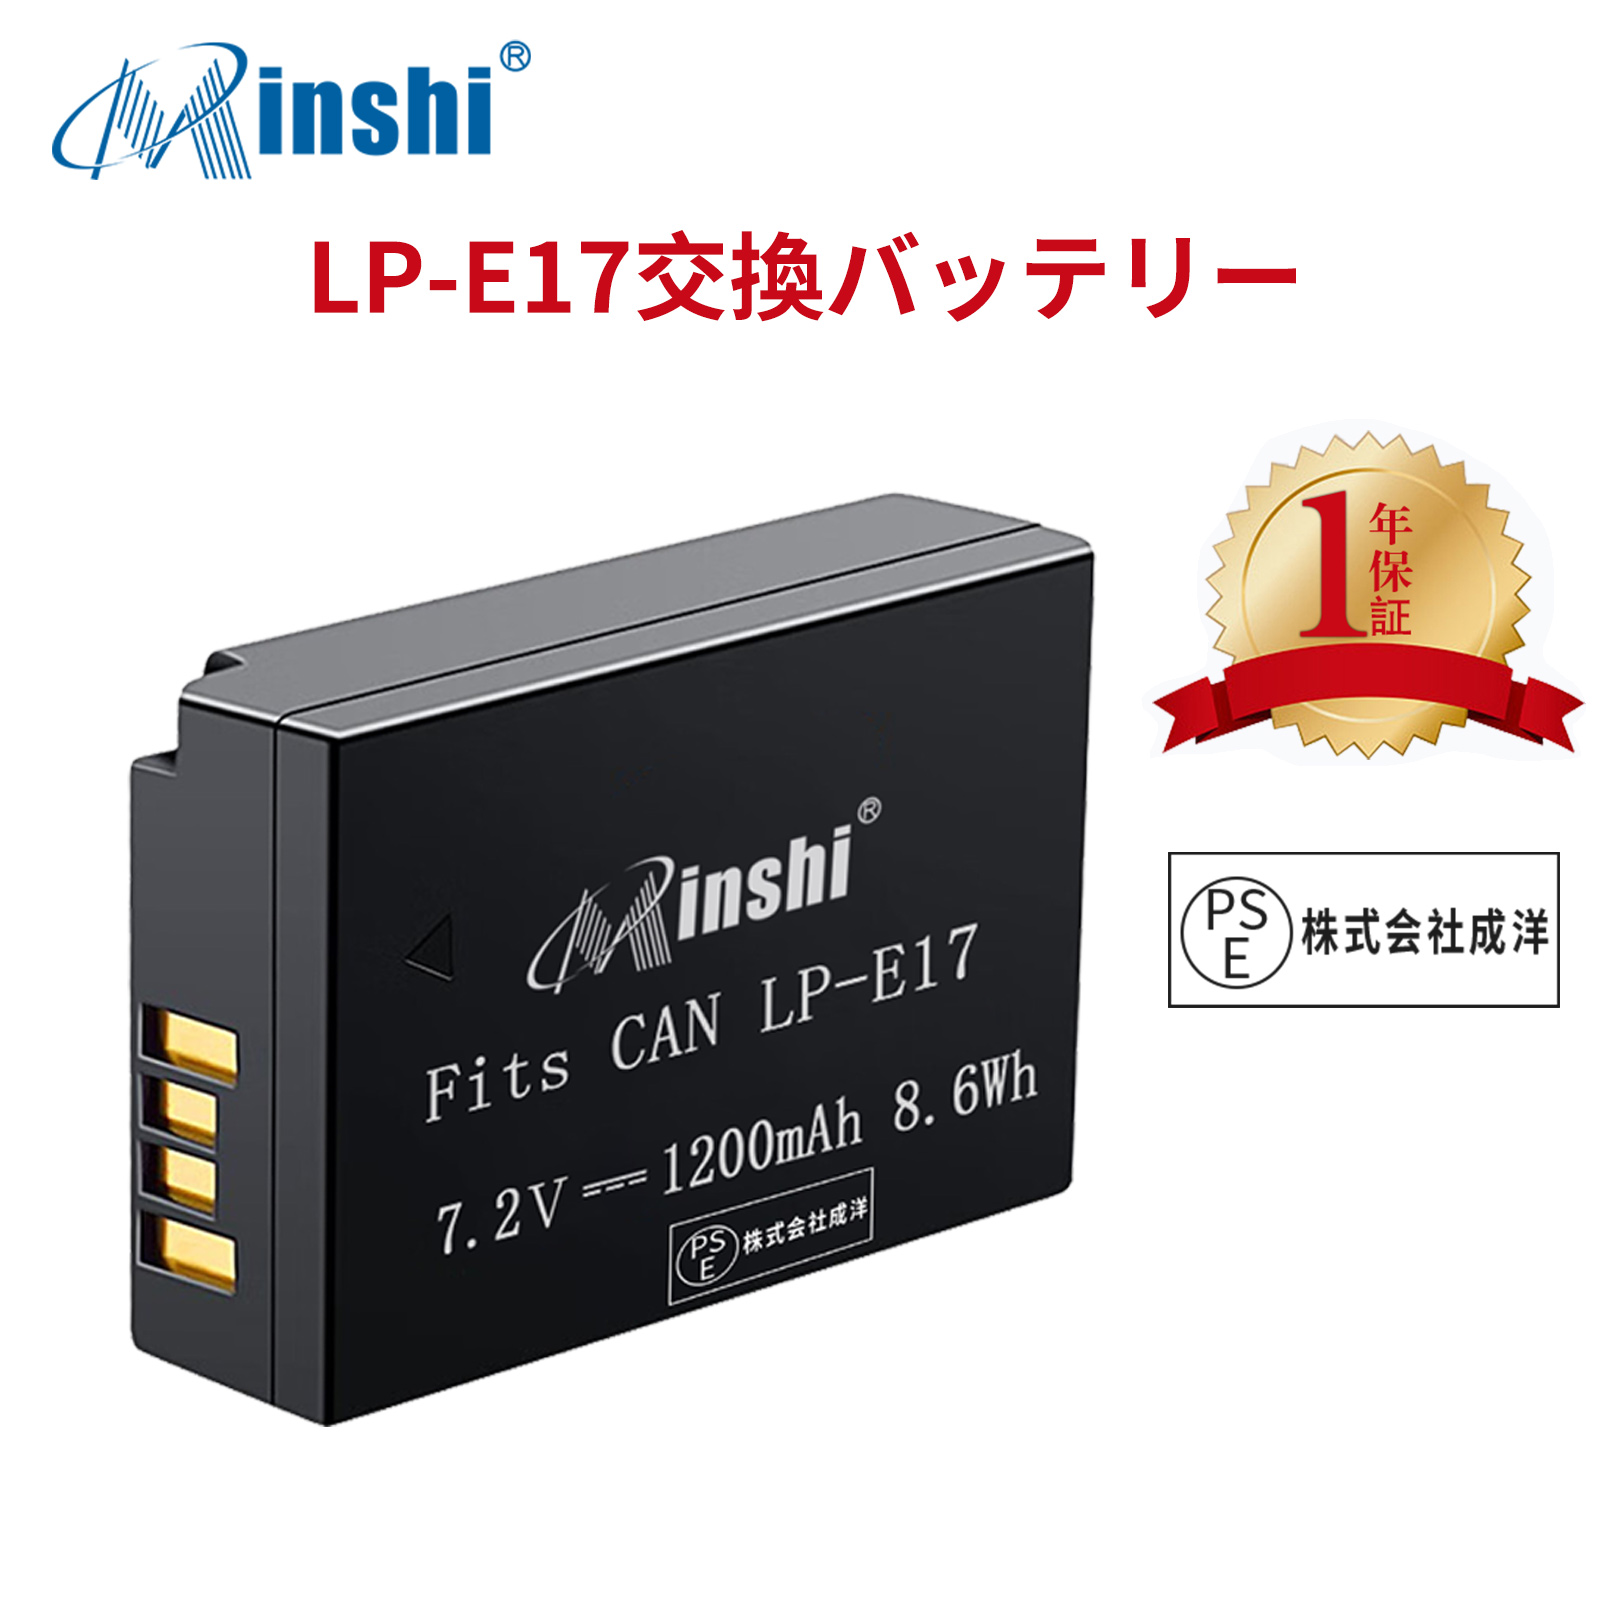 【1年保証】minshi CANON M5 【1200mAh 7.2V】PSE認定済 高品質 LP-E17 交換用バッテリー オリジナル充電器との互換性がない